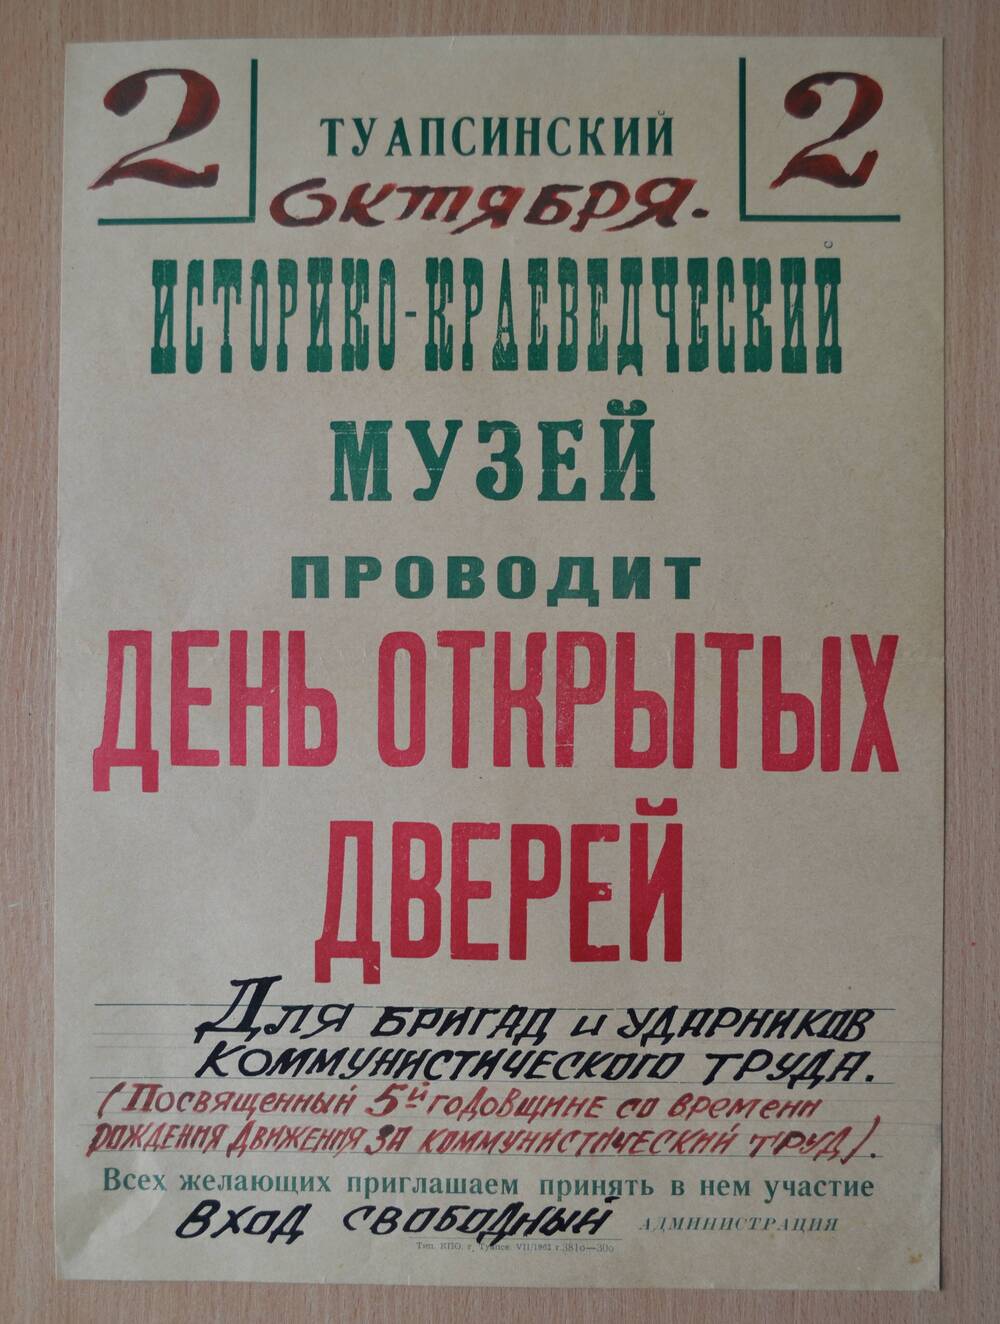 Плакат. День открытых дверей в музее (для бригад и ударников коммунистического труда) 1962г.